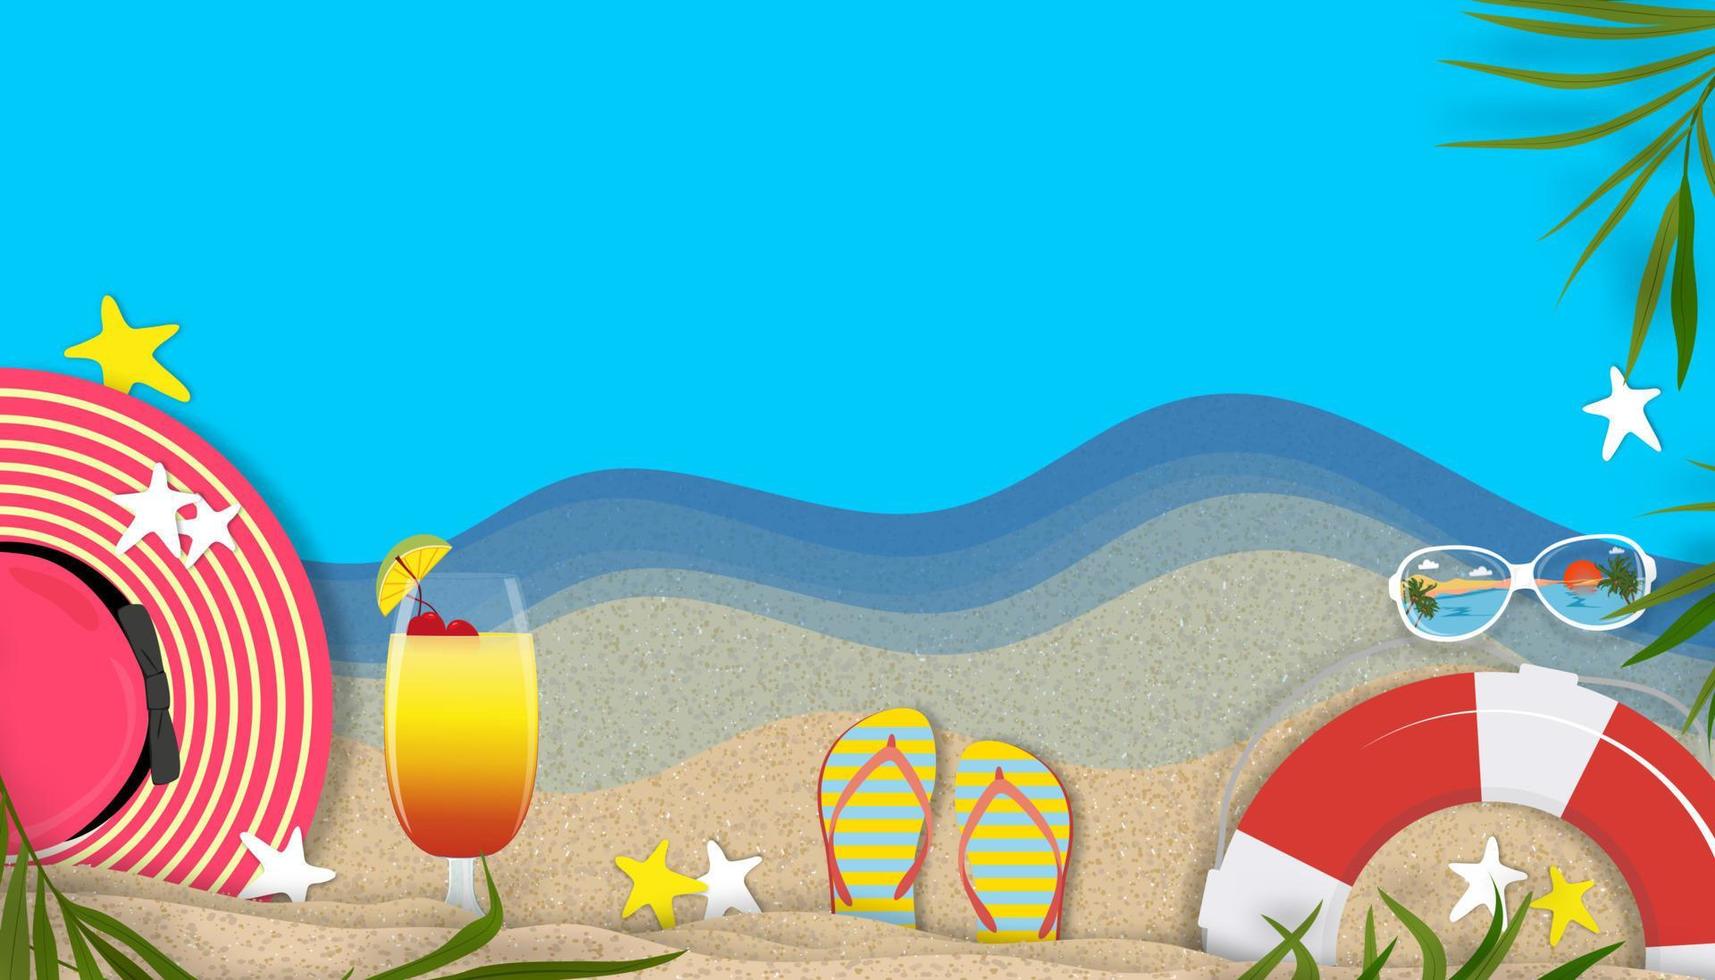 fond d'été avec thème de vacances de vacances à la plage avec espace de copie sur la plage de sable, bannière d'horizon vectoriel papier plat coupé design d'été tropical avec bordure de feuilles de cocotier sur la plage